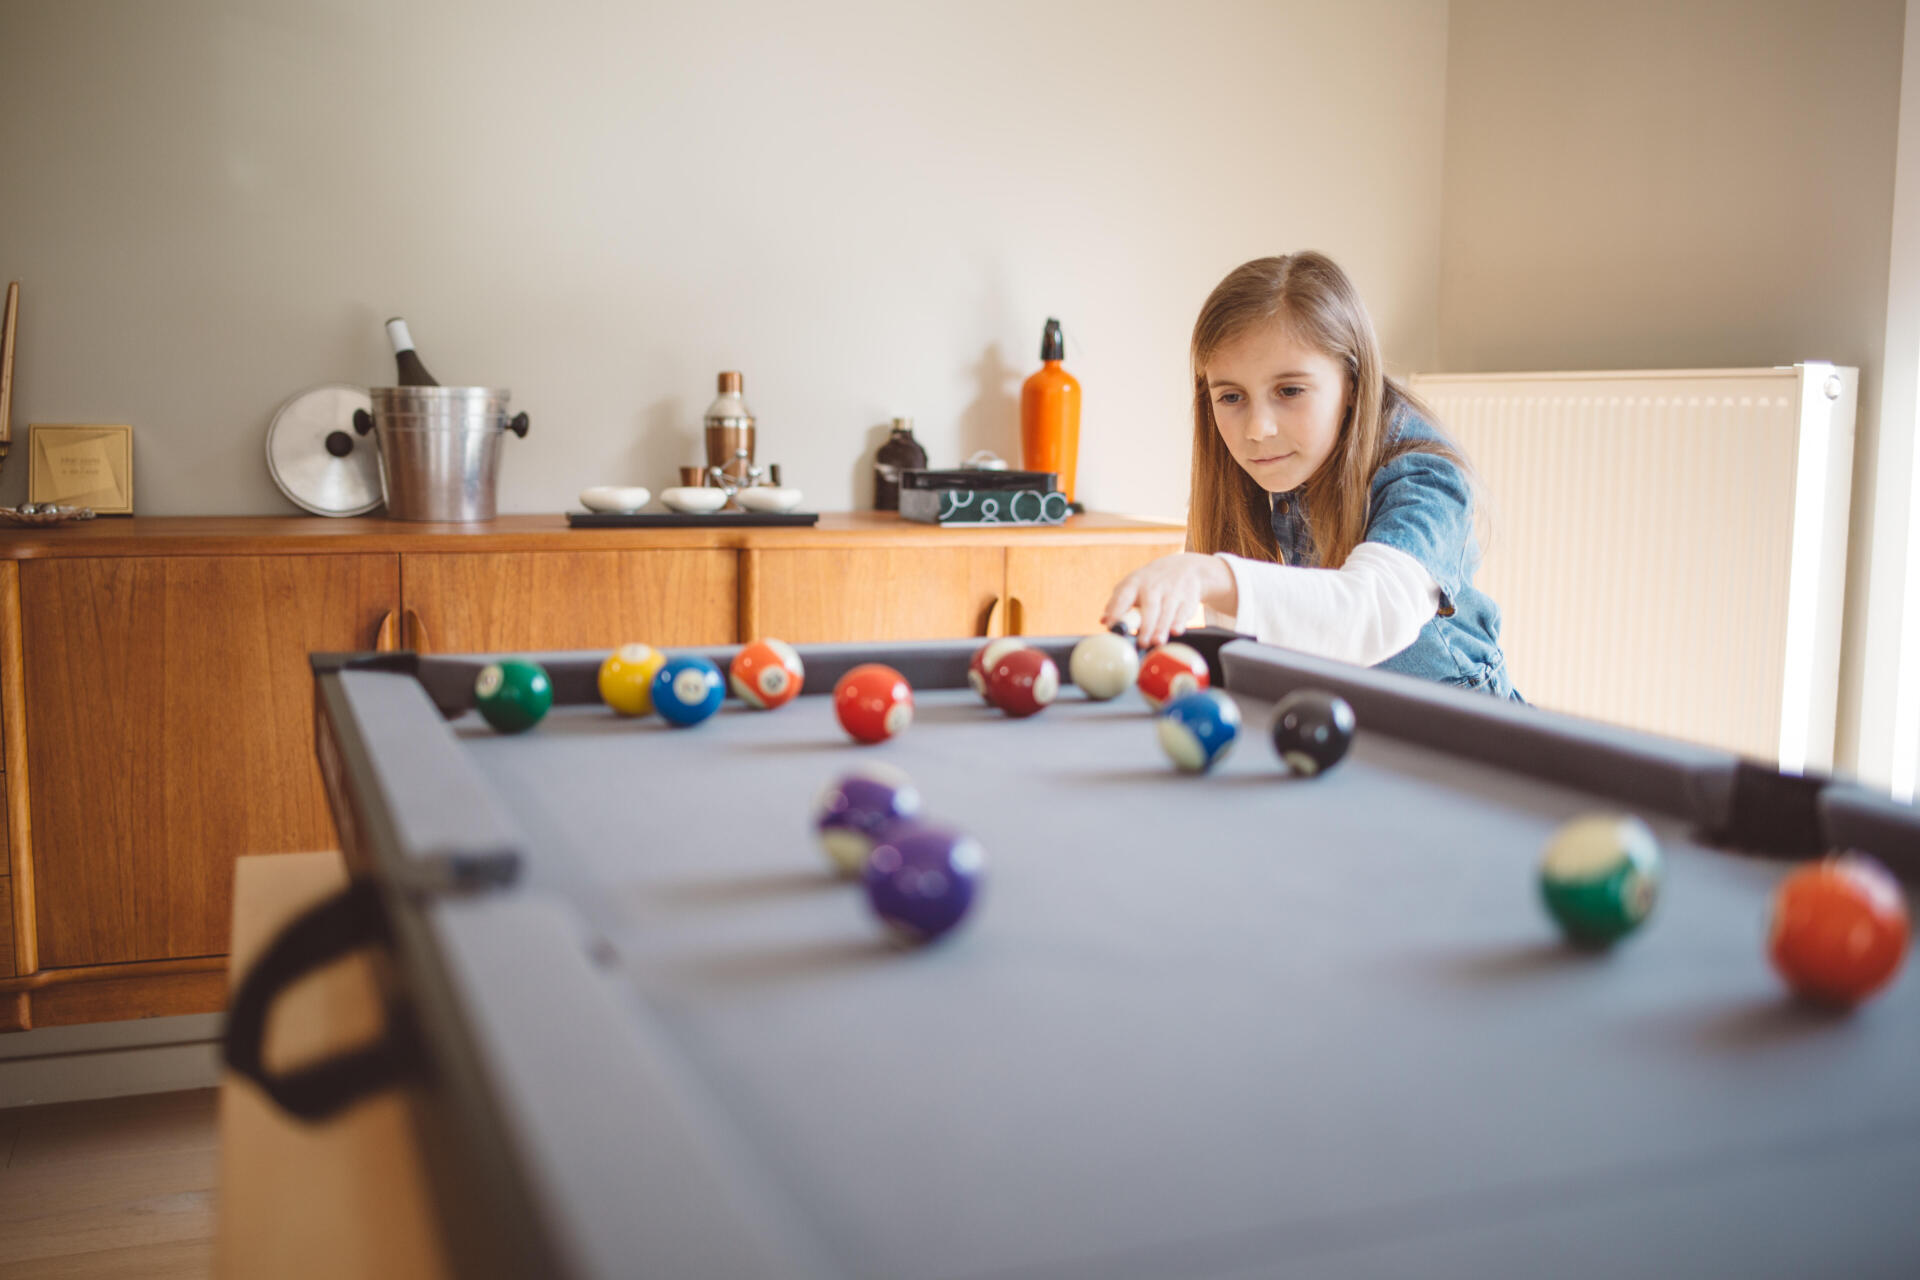 Giocare a biliardo con i bambini: quali regole pensare?